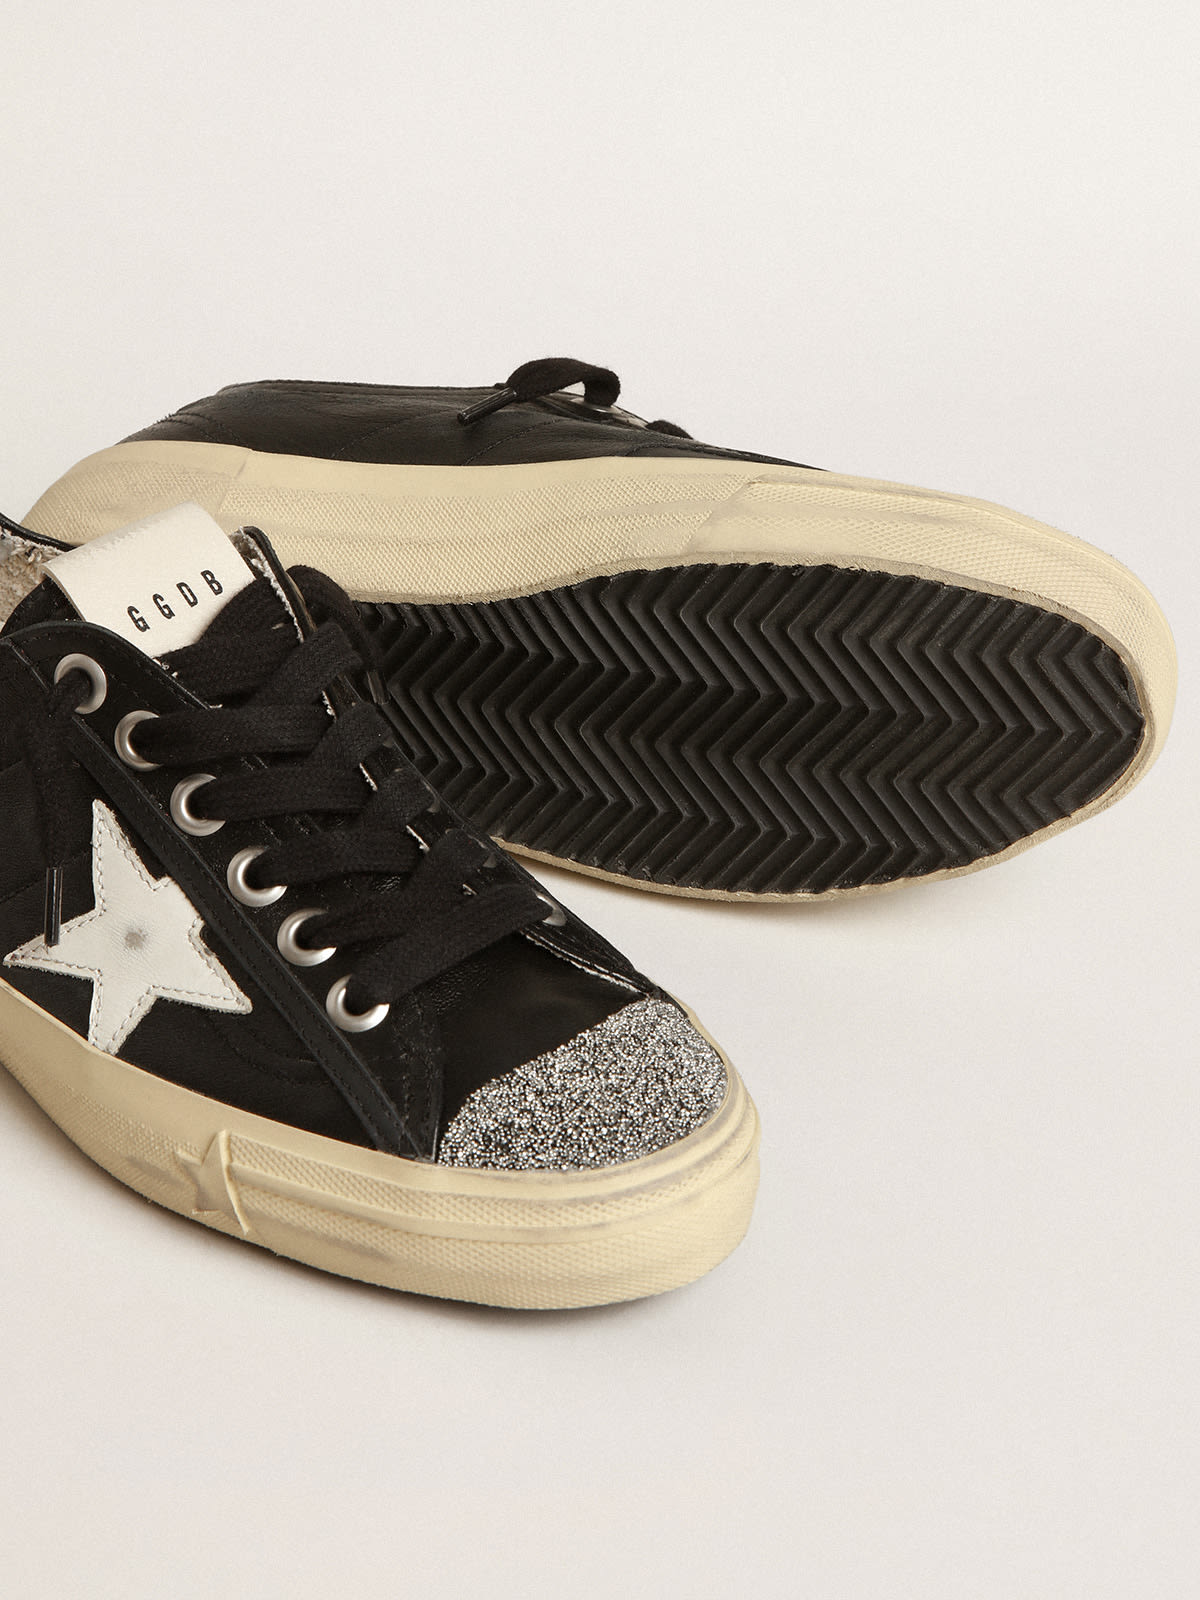 Golden Goose - V-Star in black nappa leather with white star and Swarovski crystal toe in 